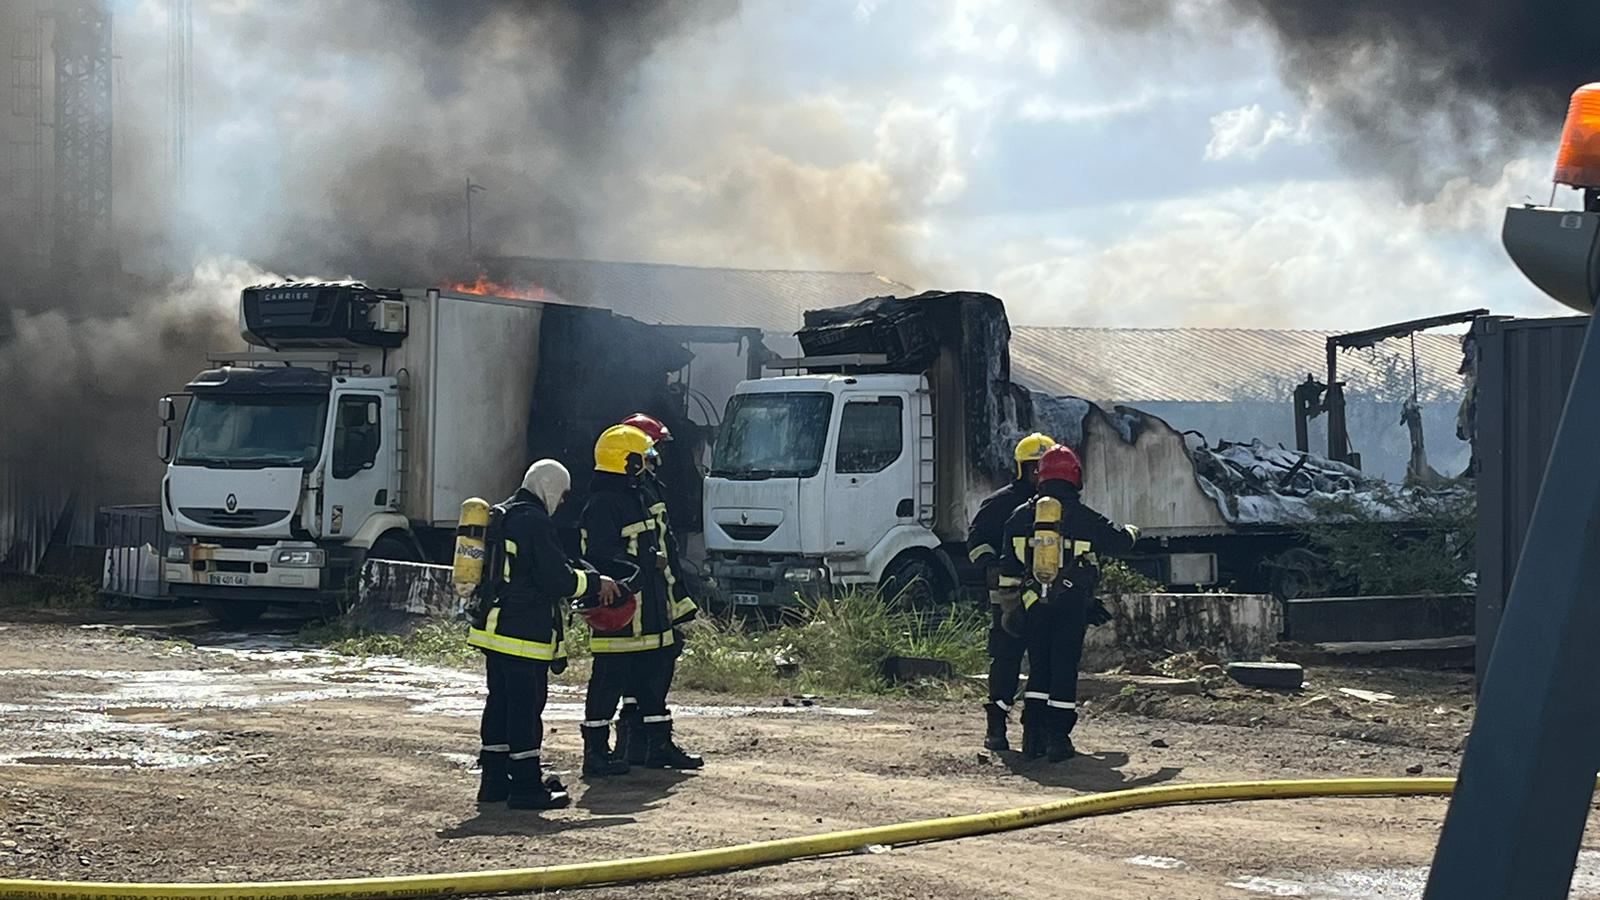     L'incendie de camions frigorifiques à Ducos est maîtrisé 

